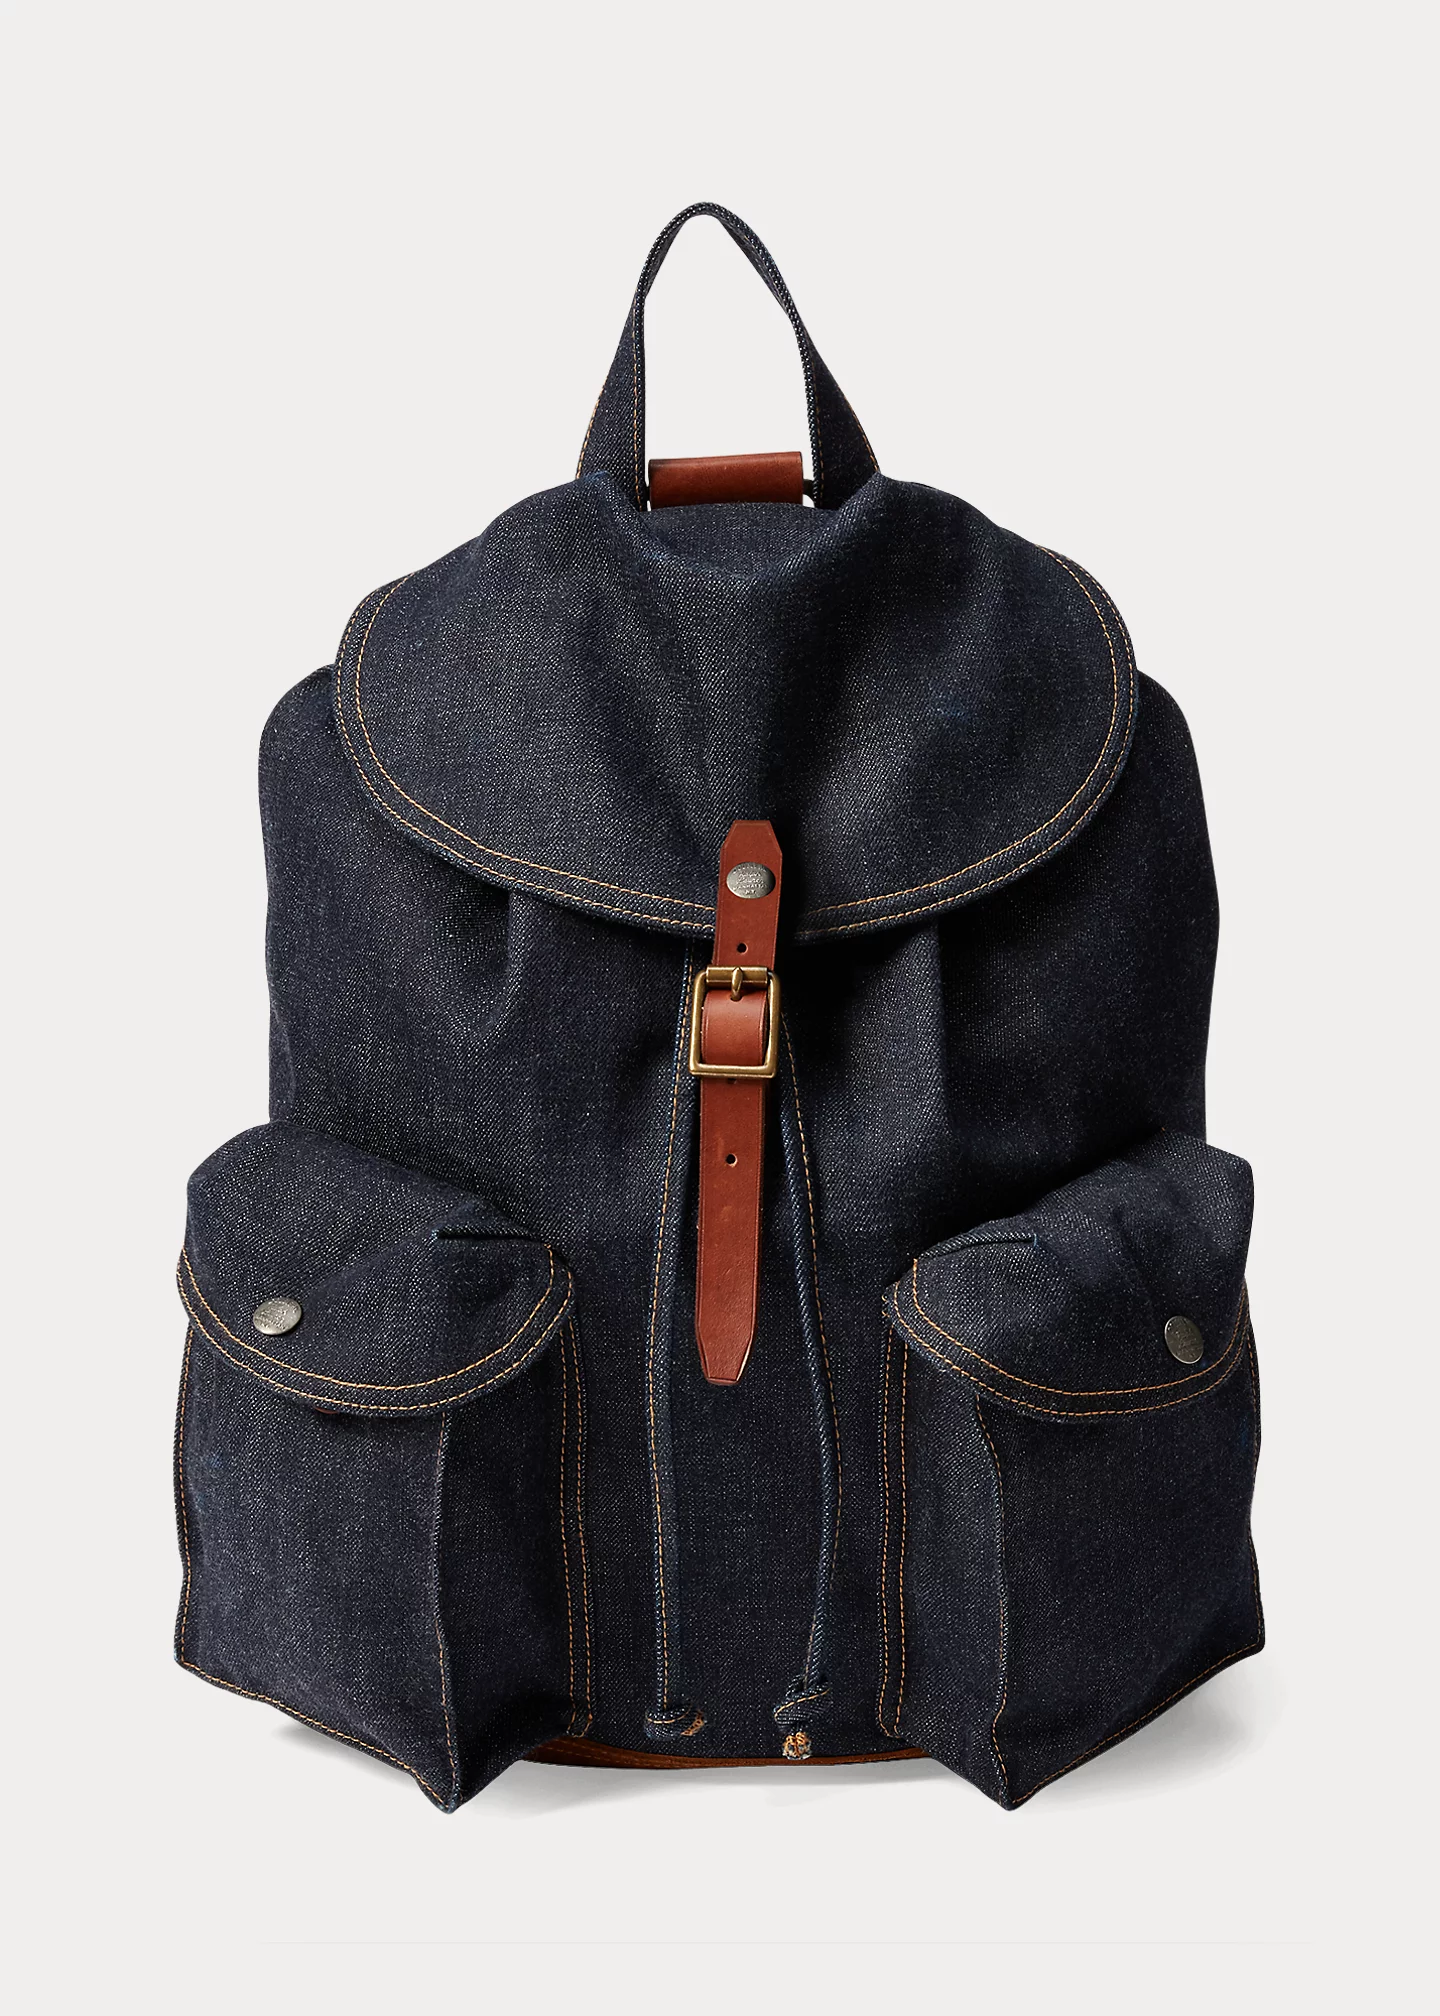 stylish handbagsDenim Rucksack-,$48.39